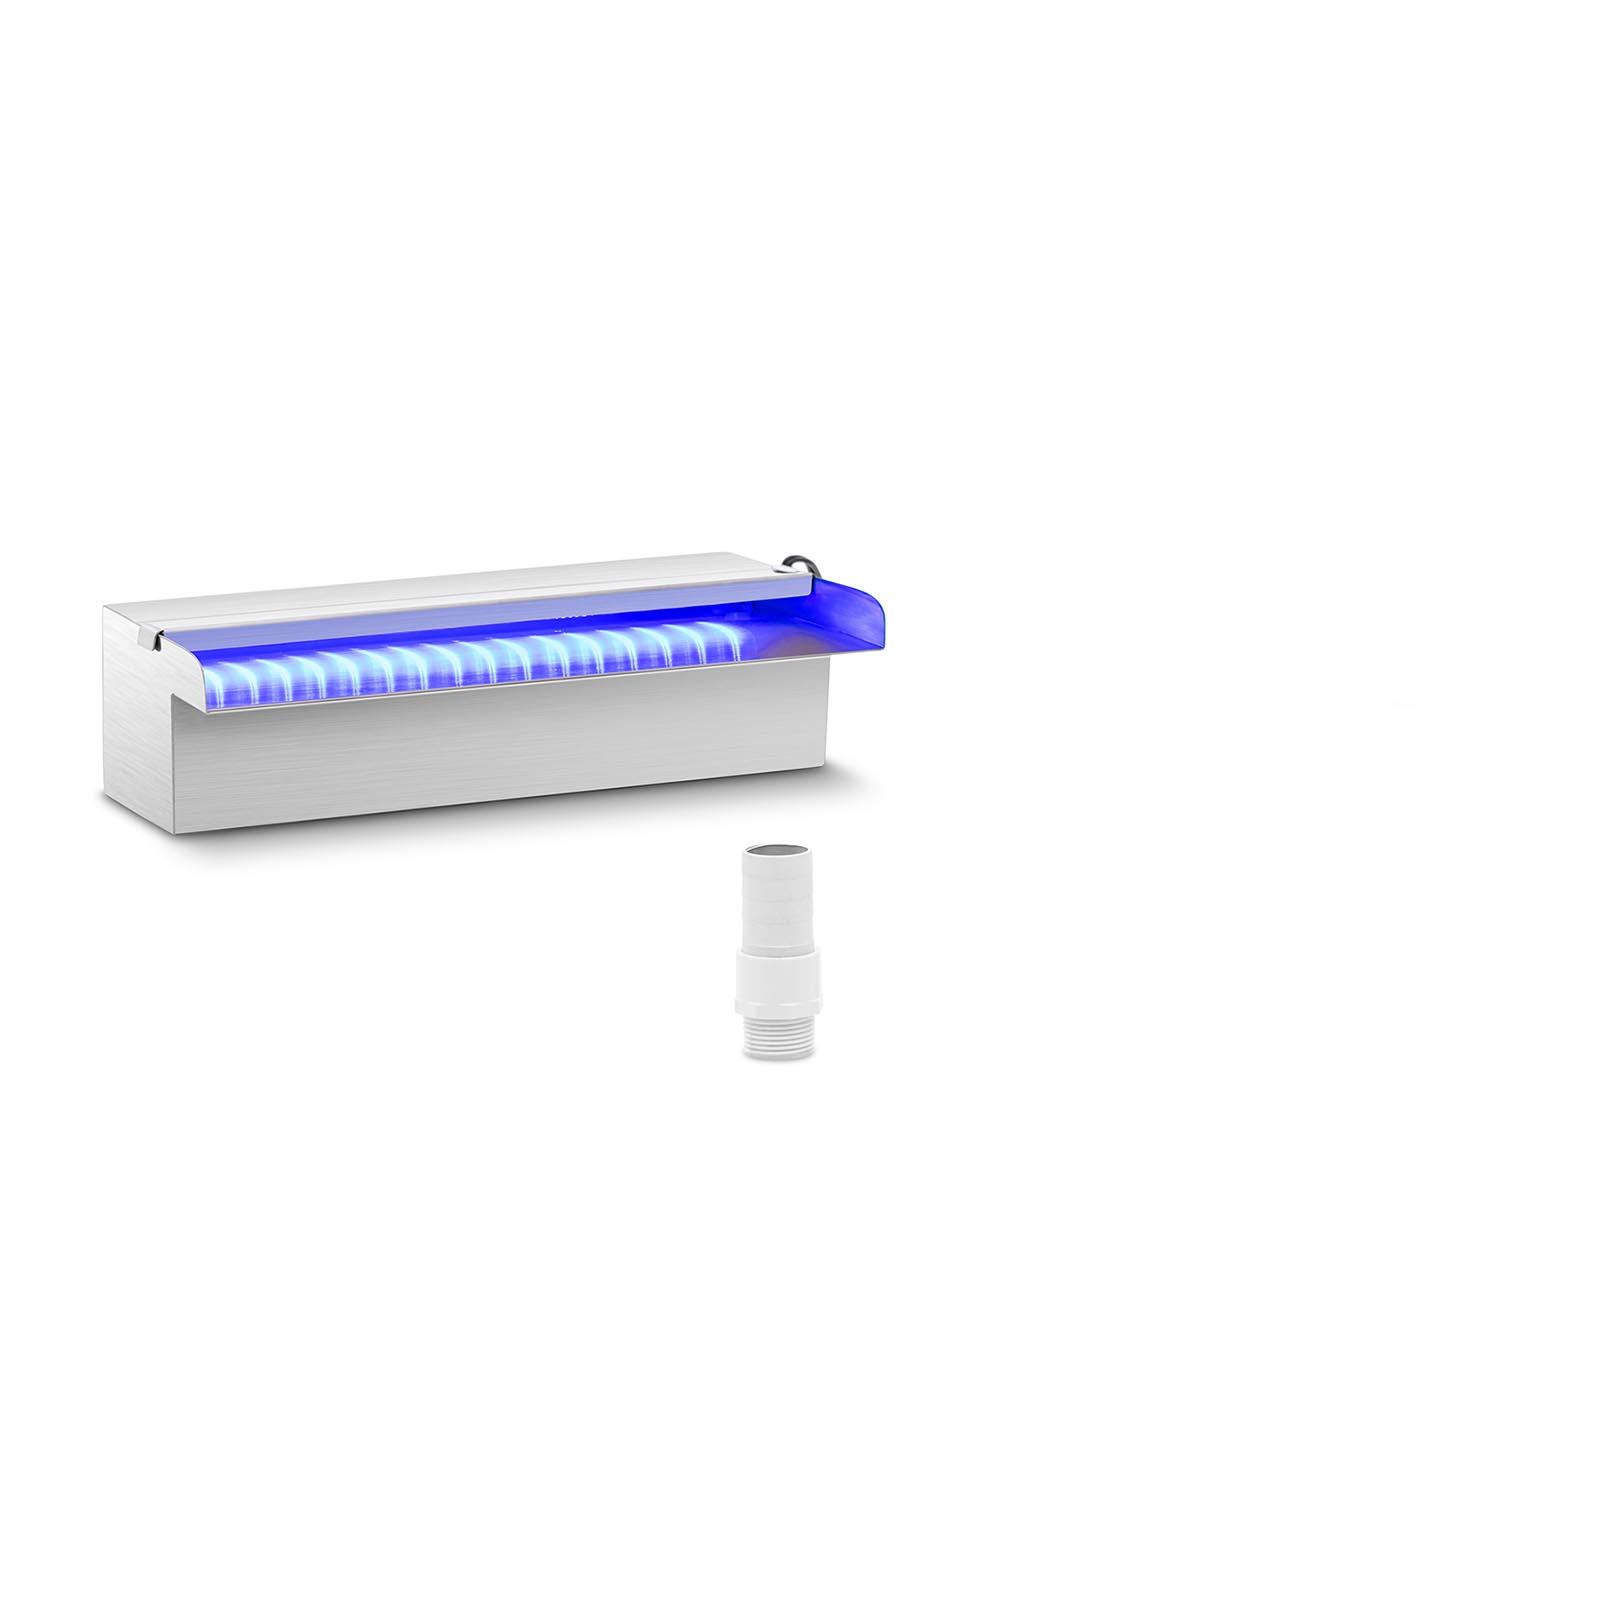 Vattenfall till pool - 30 cm - LED-belysning - Blå / vit - Öppet vattenutlopp